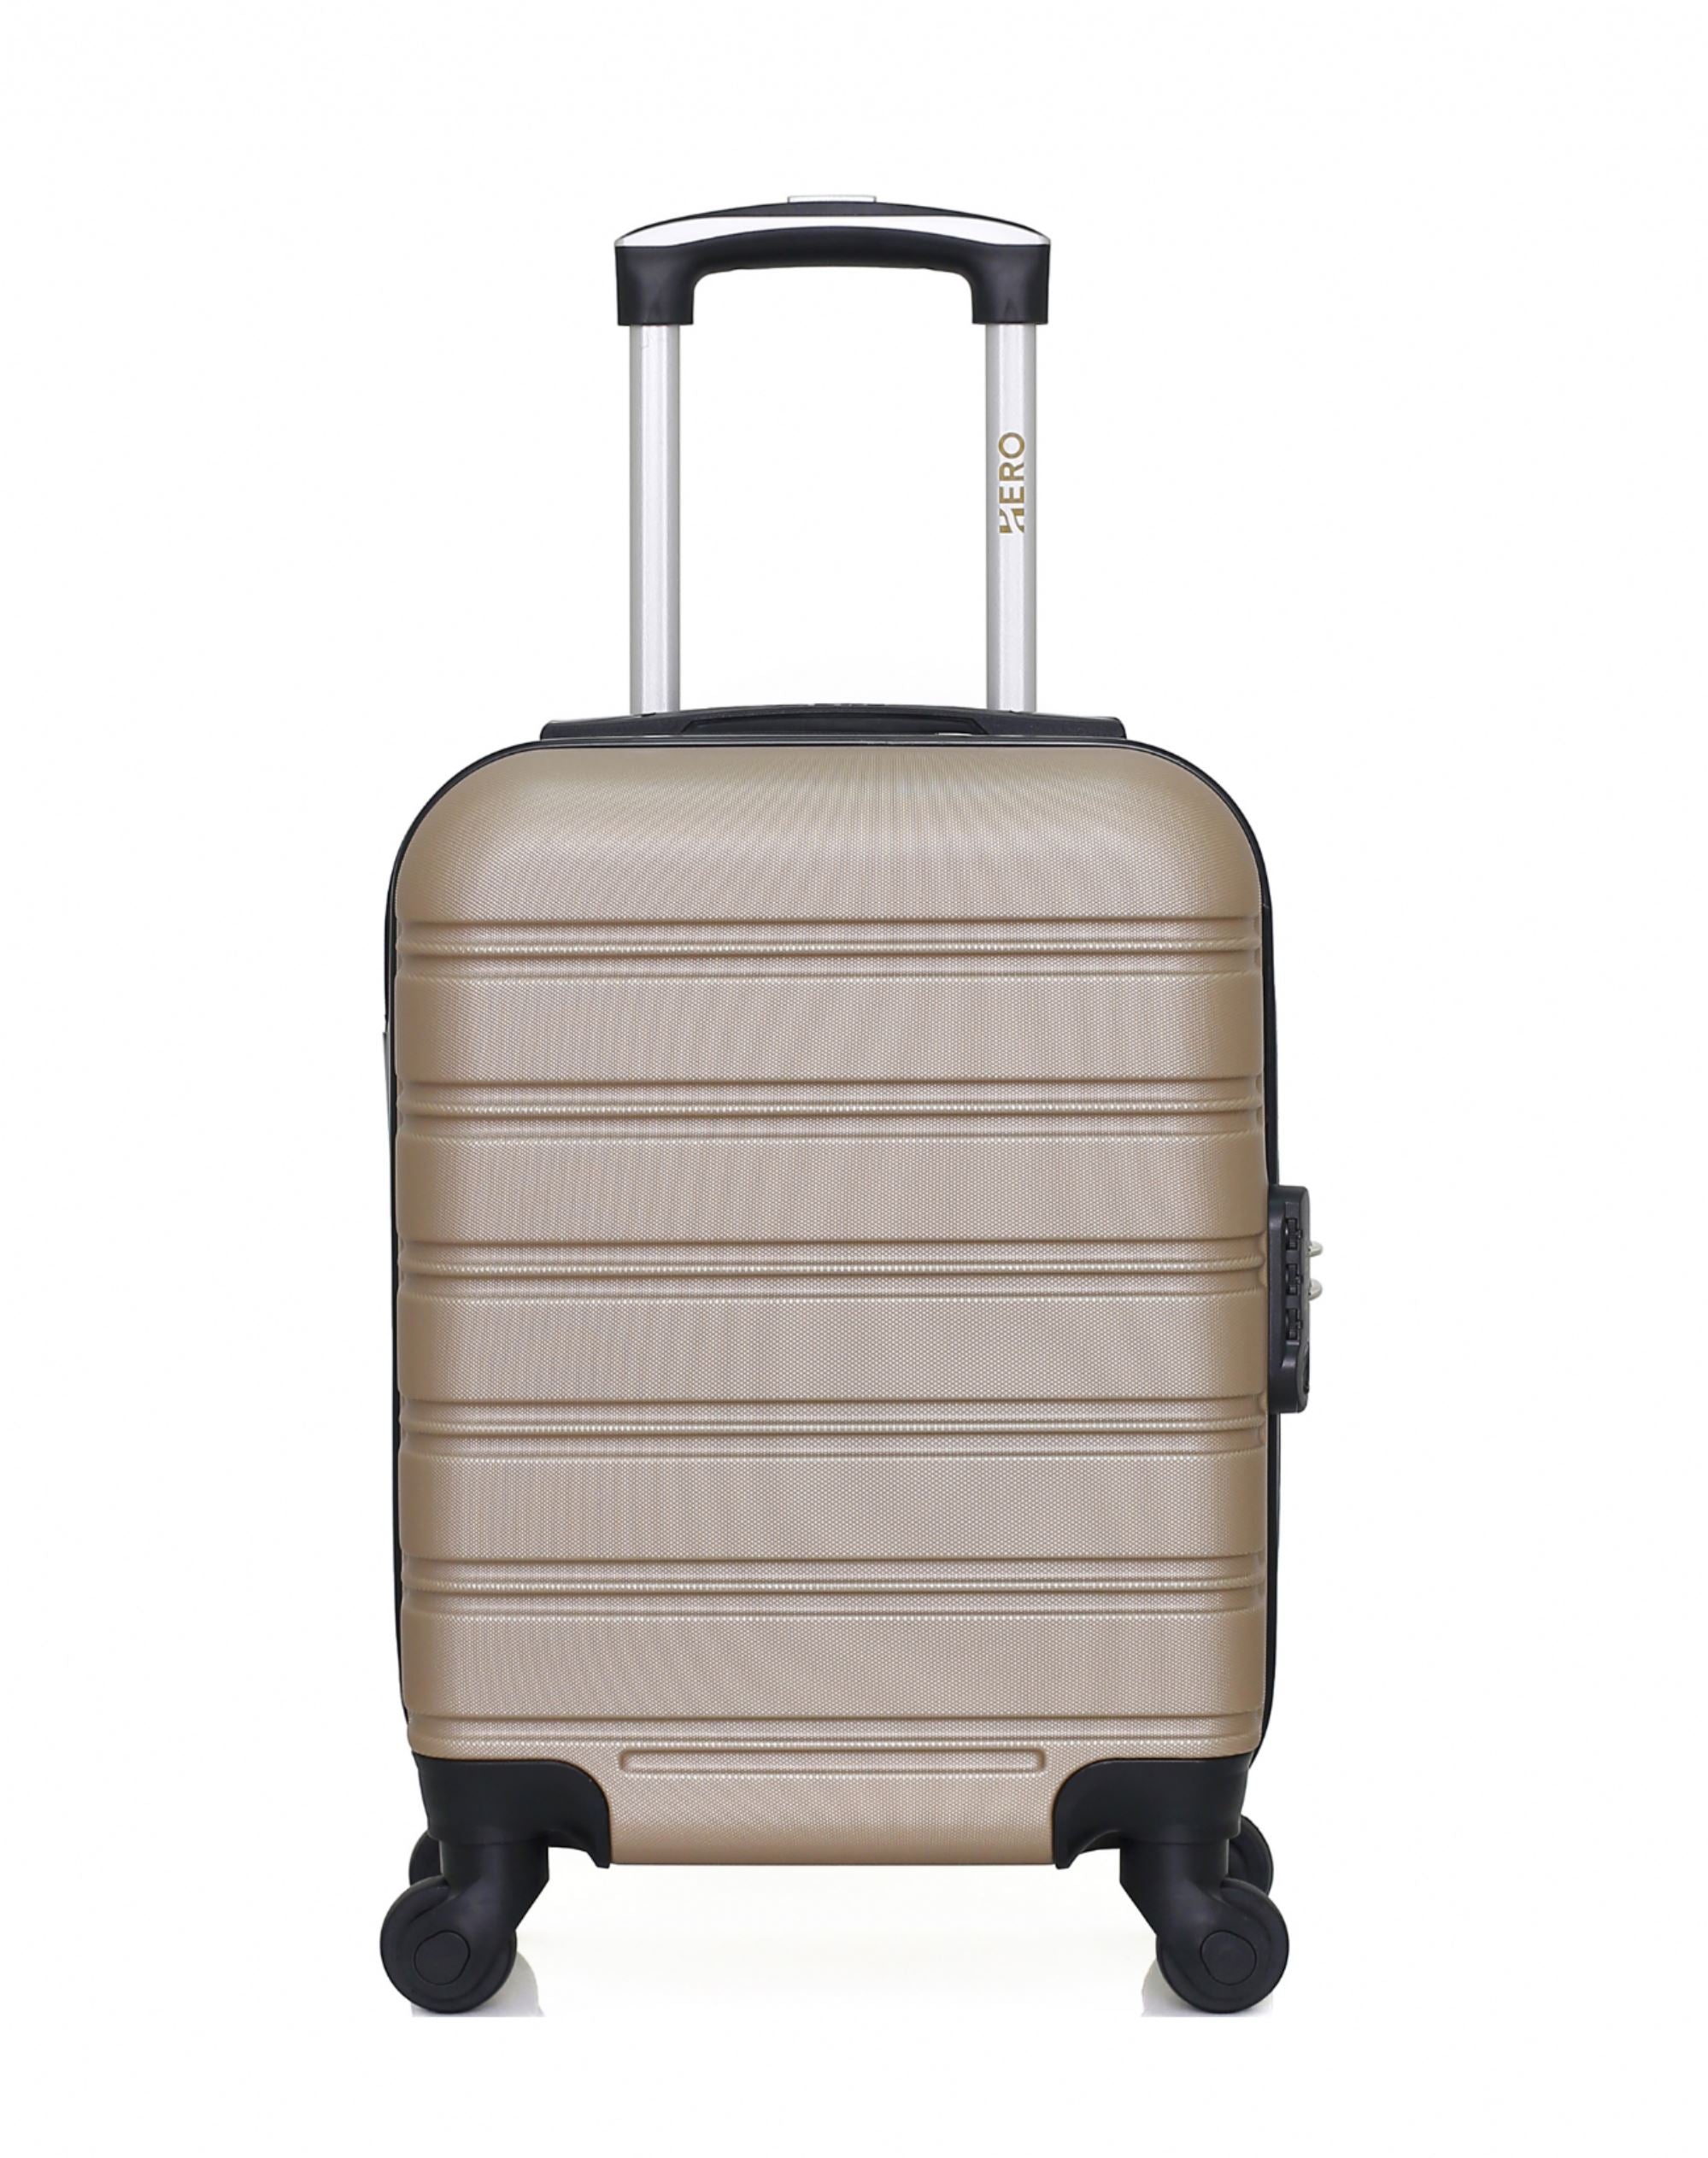 Guide des tailles de valises pour voyager